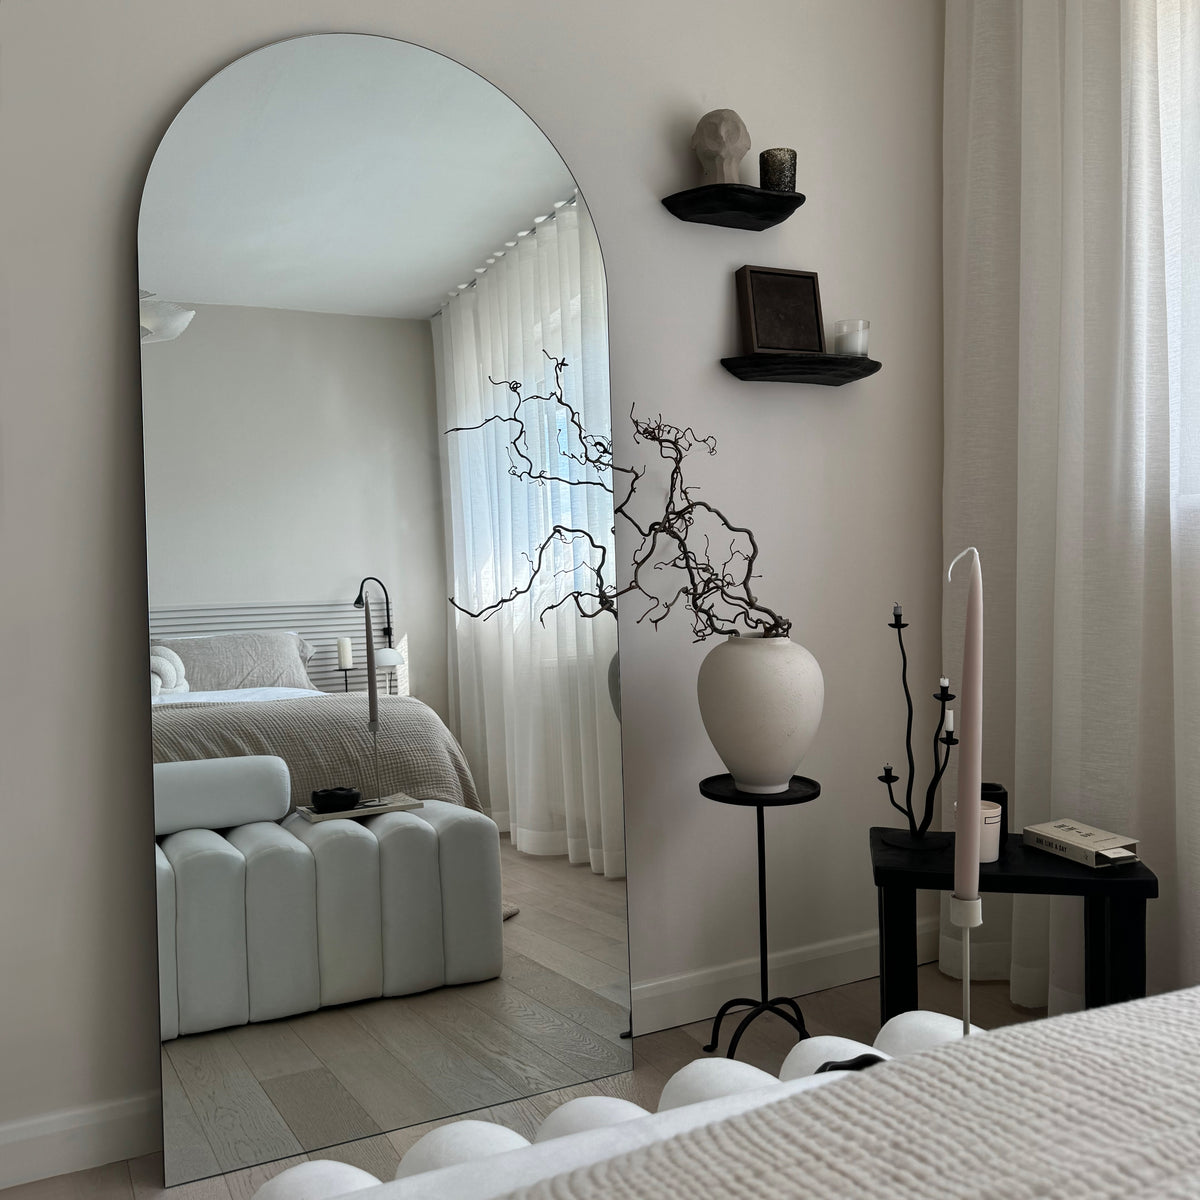 Edge - Grand miroir long arqué sans cadre 179 cm x 80 cm